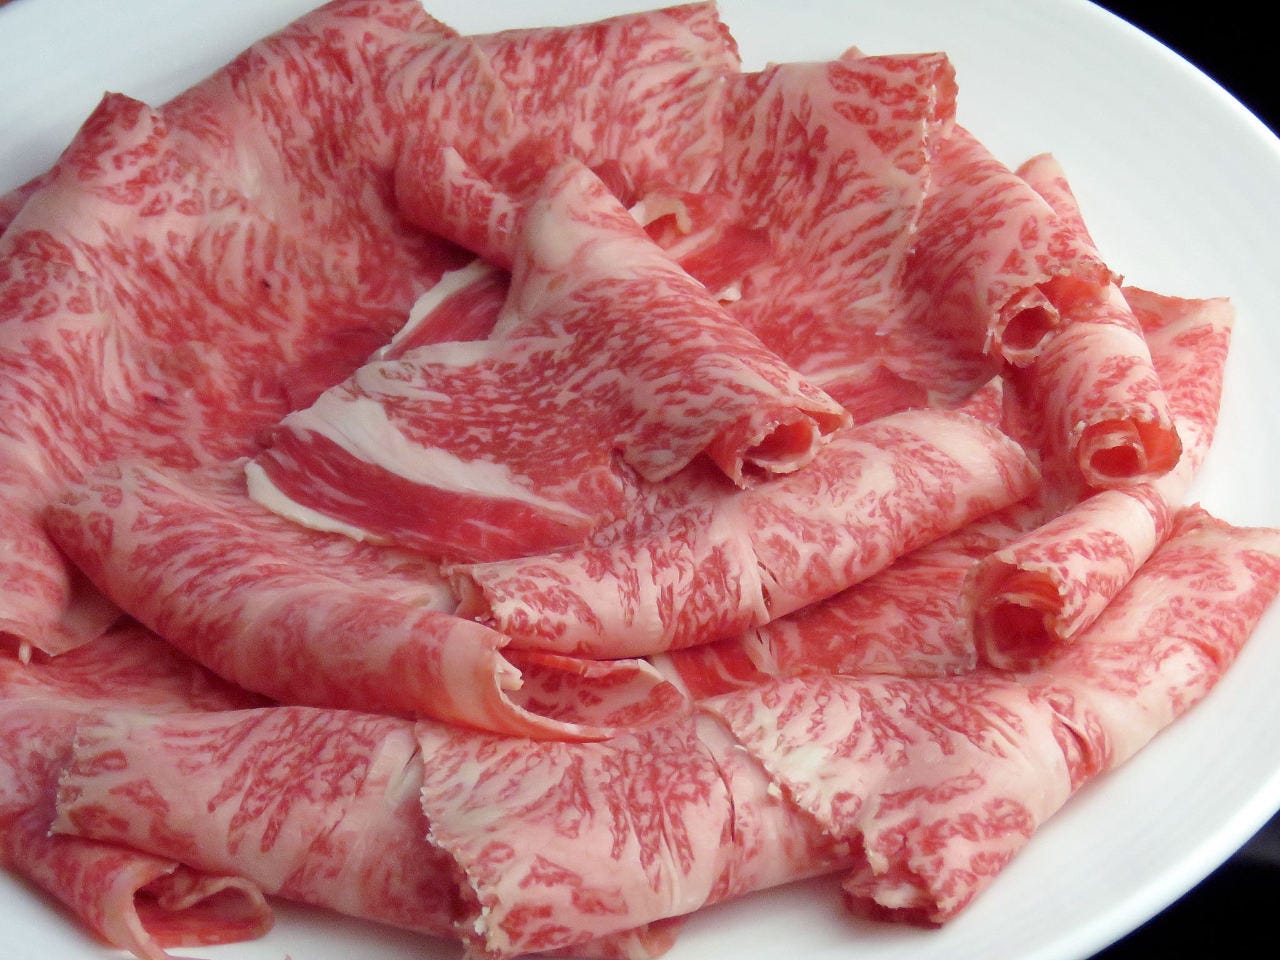 ◆肉屋直営◎国産牛肉・国産豚肉